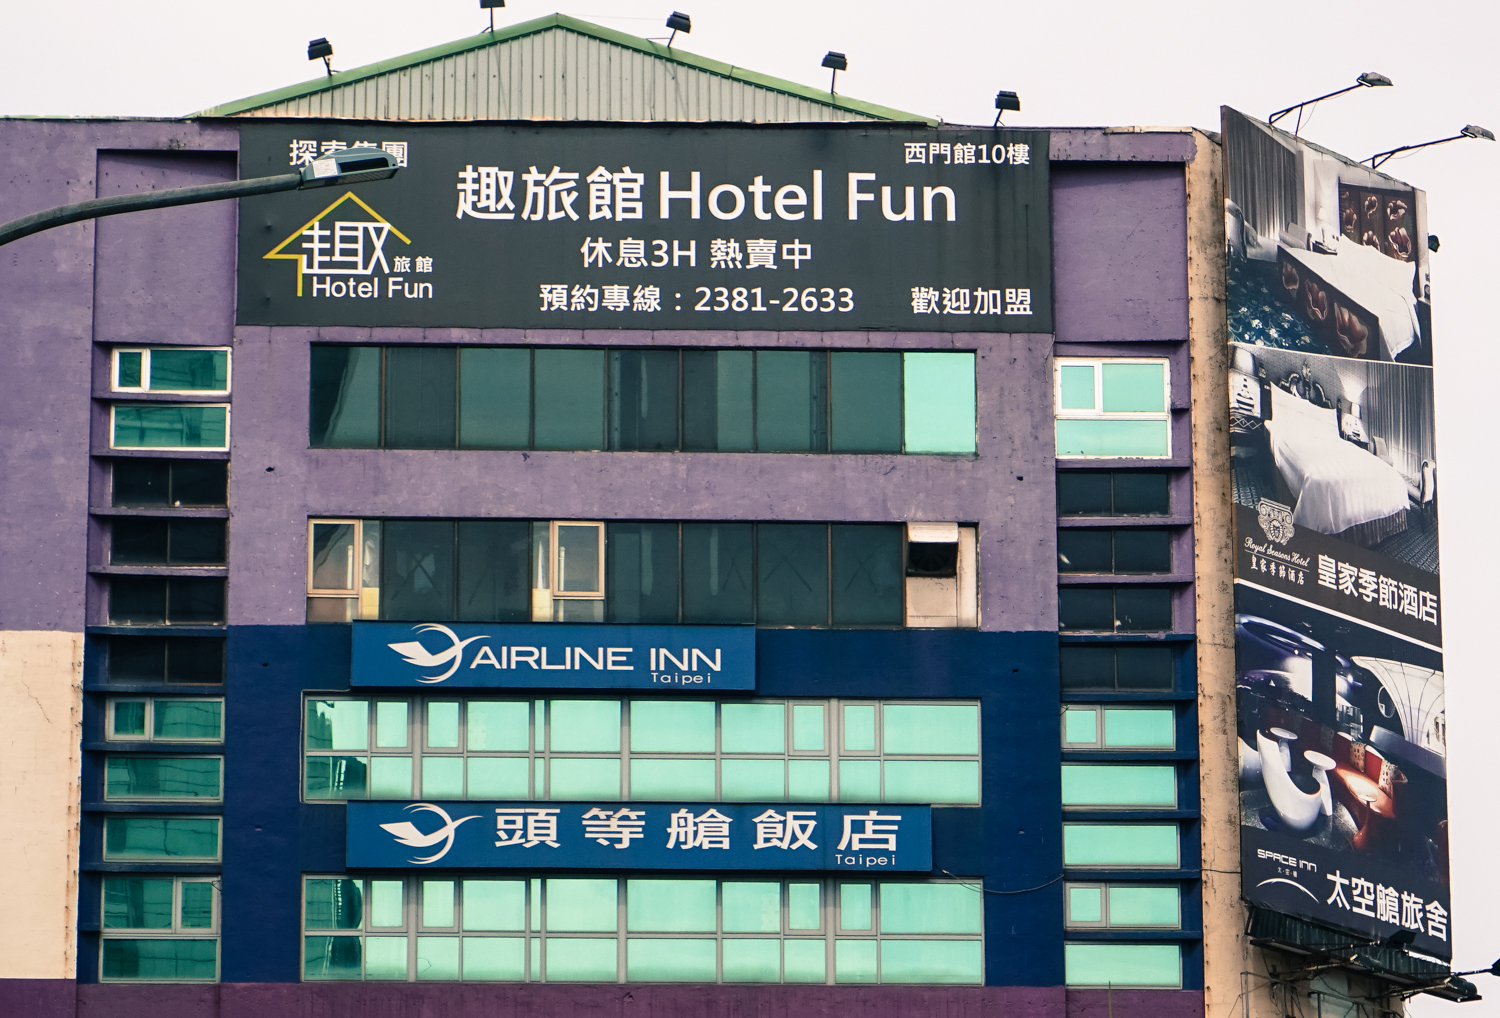 Fun Hotel, Taipei, Taiwan